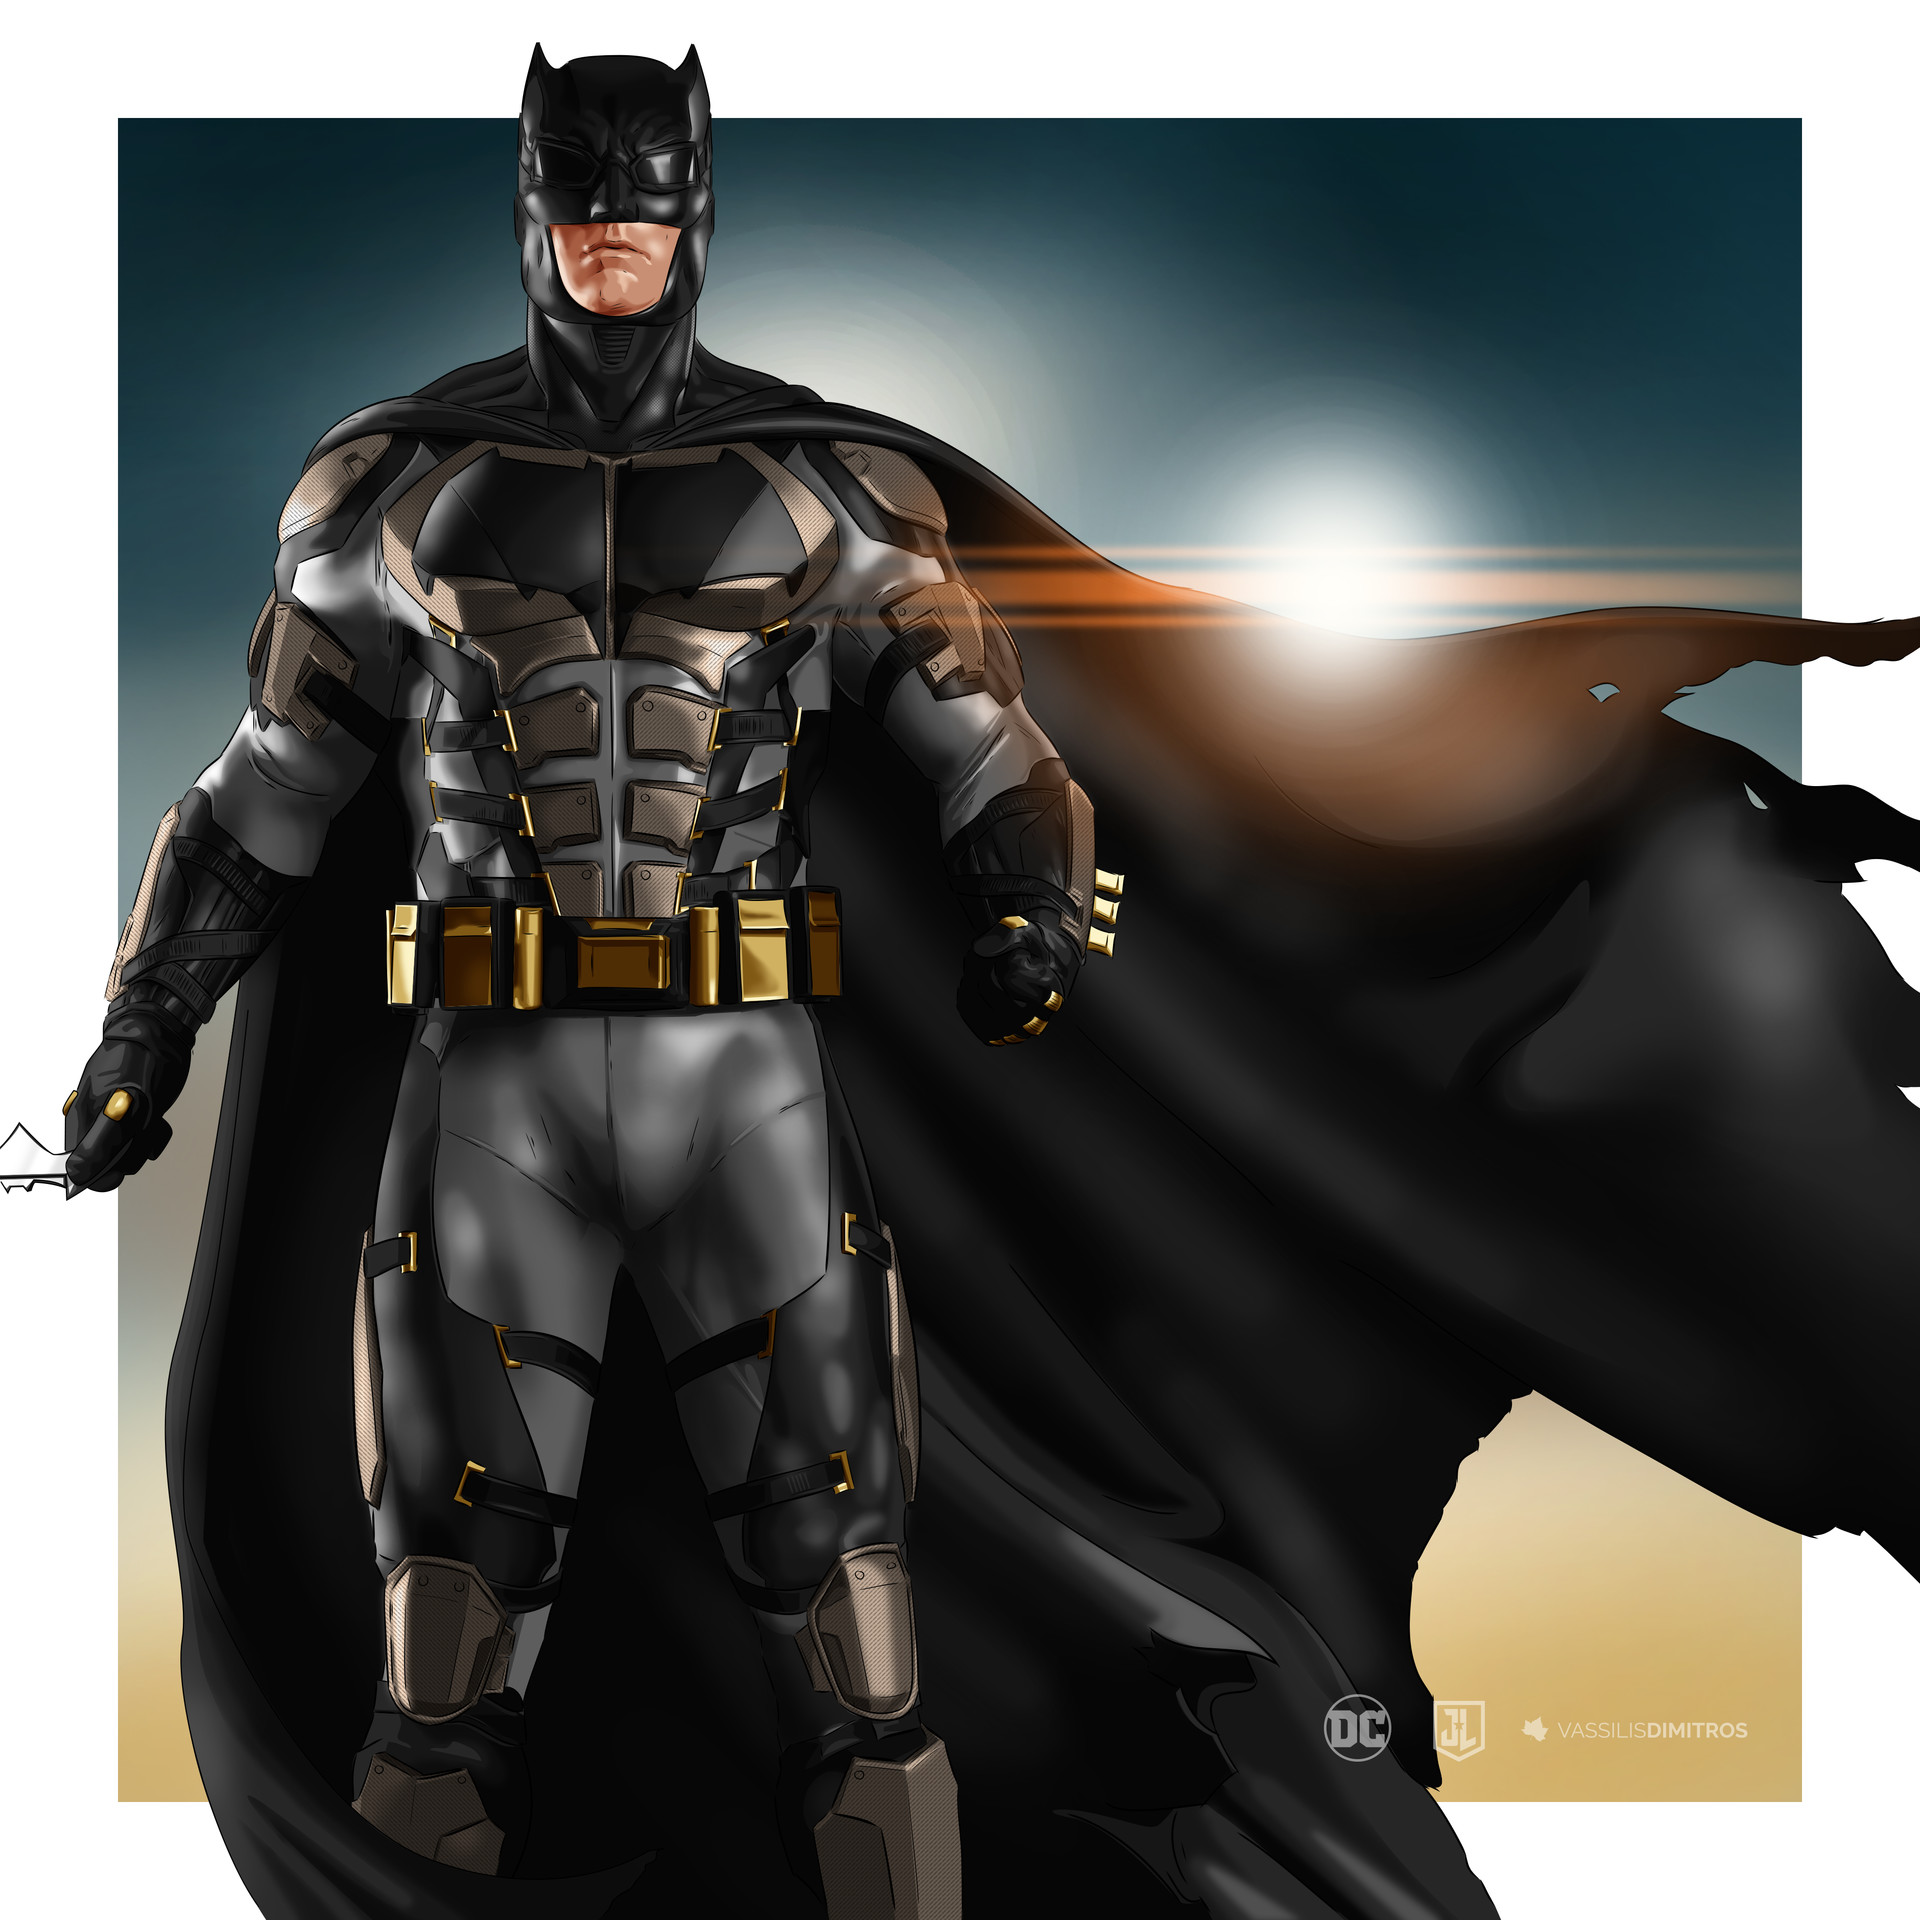 Vassilis Dimitros - Batman: Justice League (Tactical Suit)